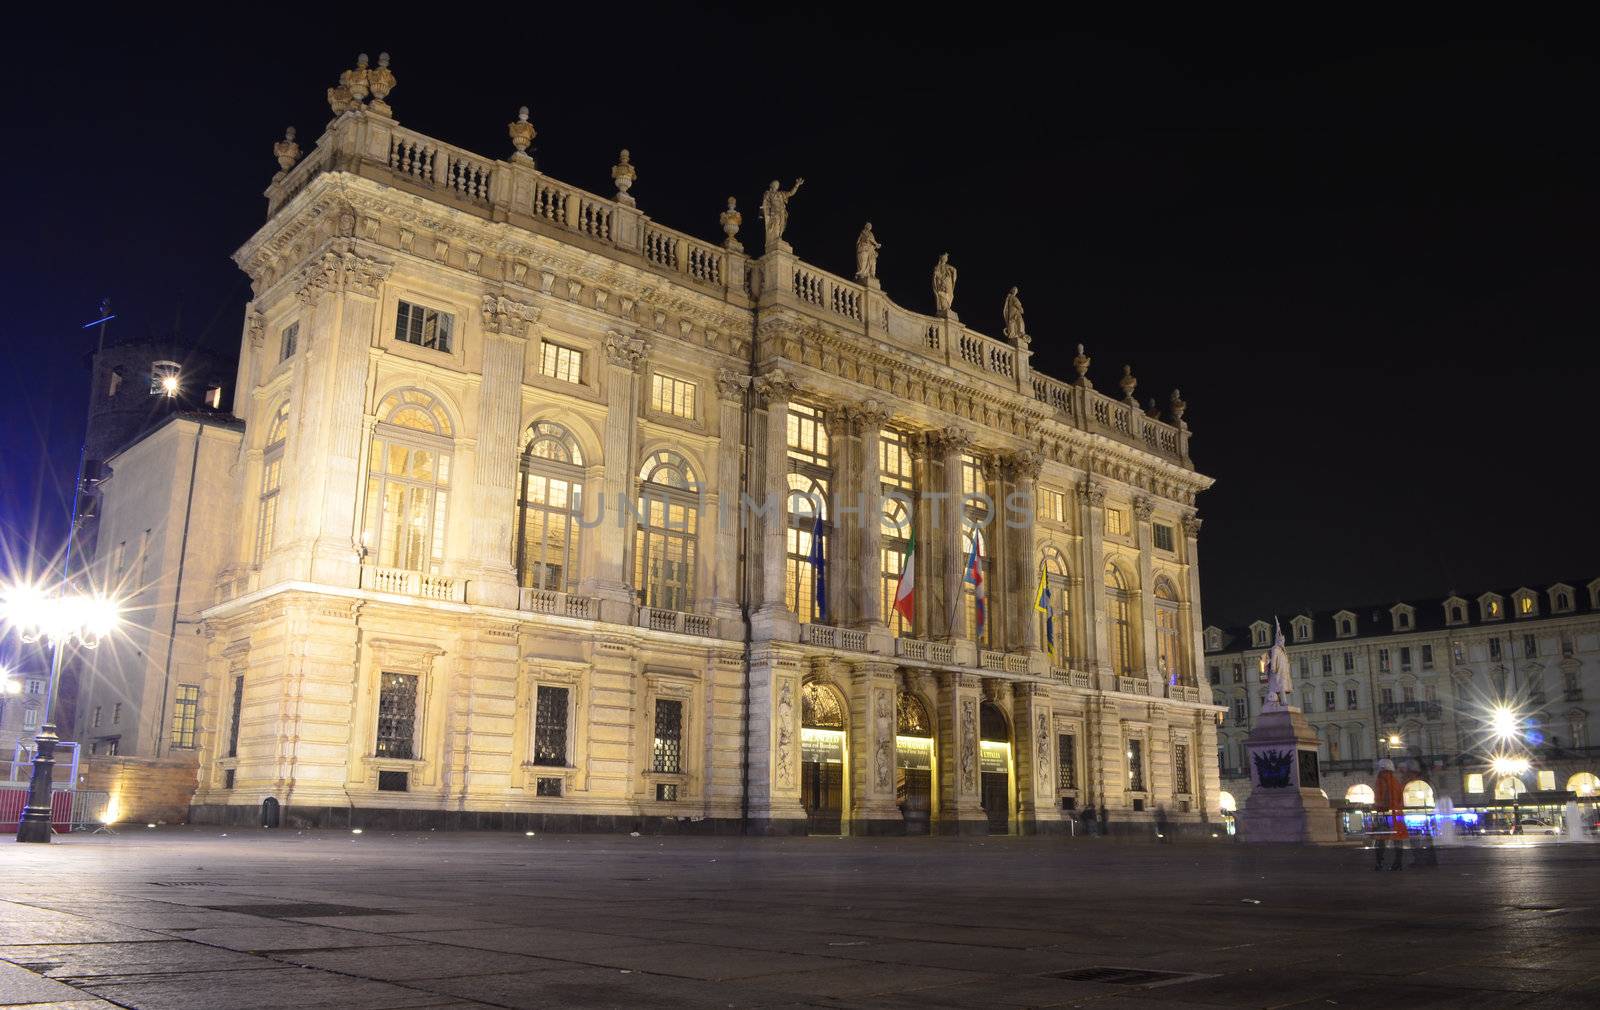 Palazzo Madama in Piazza Castello, Turin, Italy. Night view